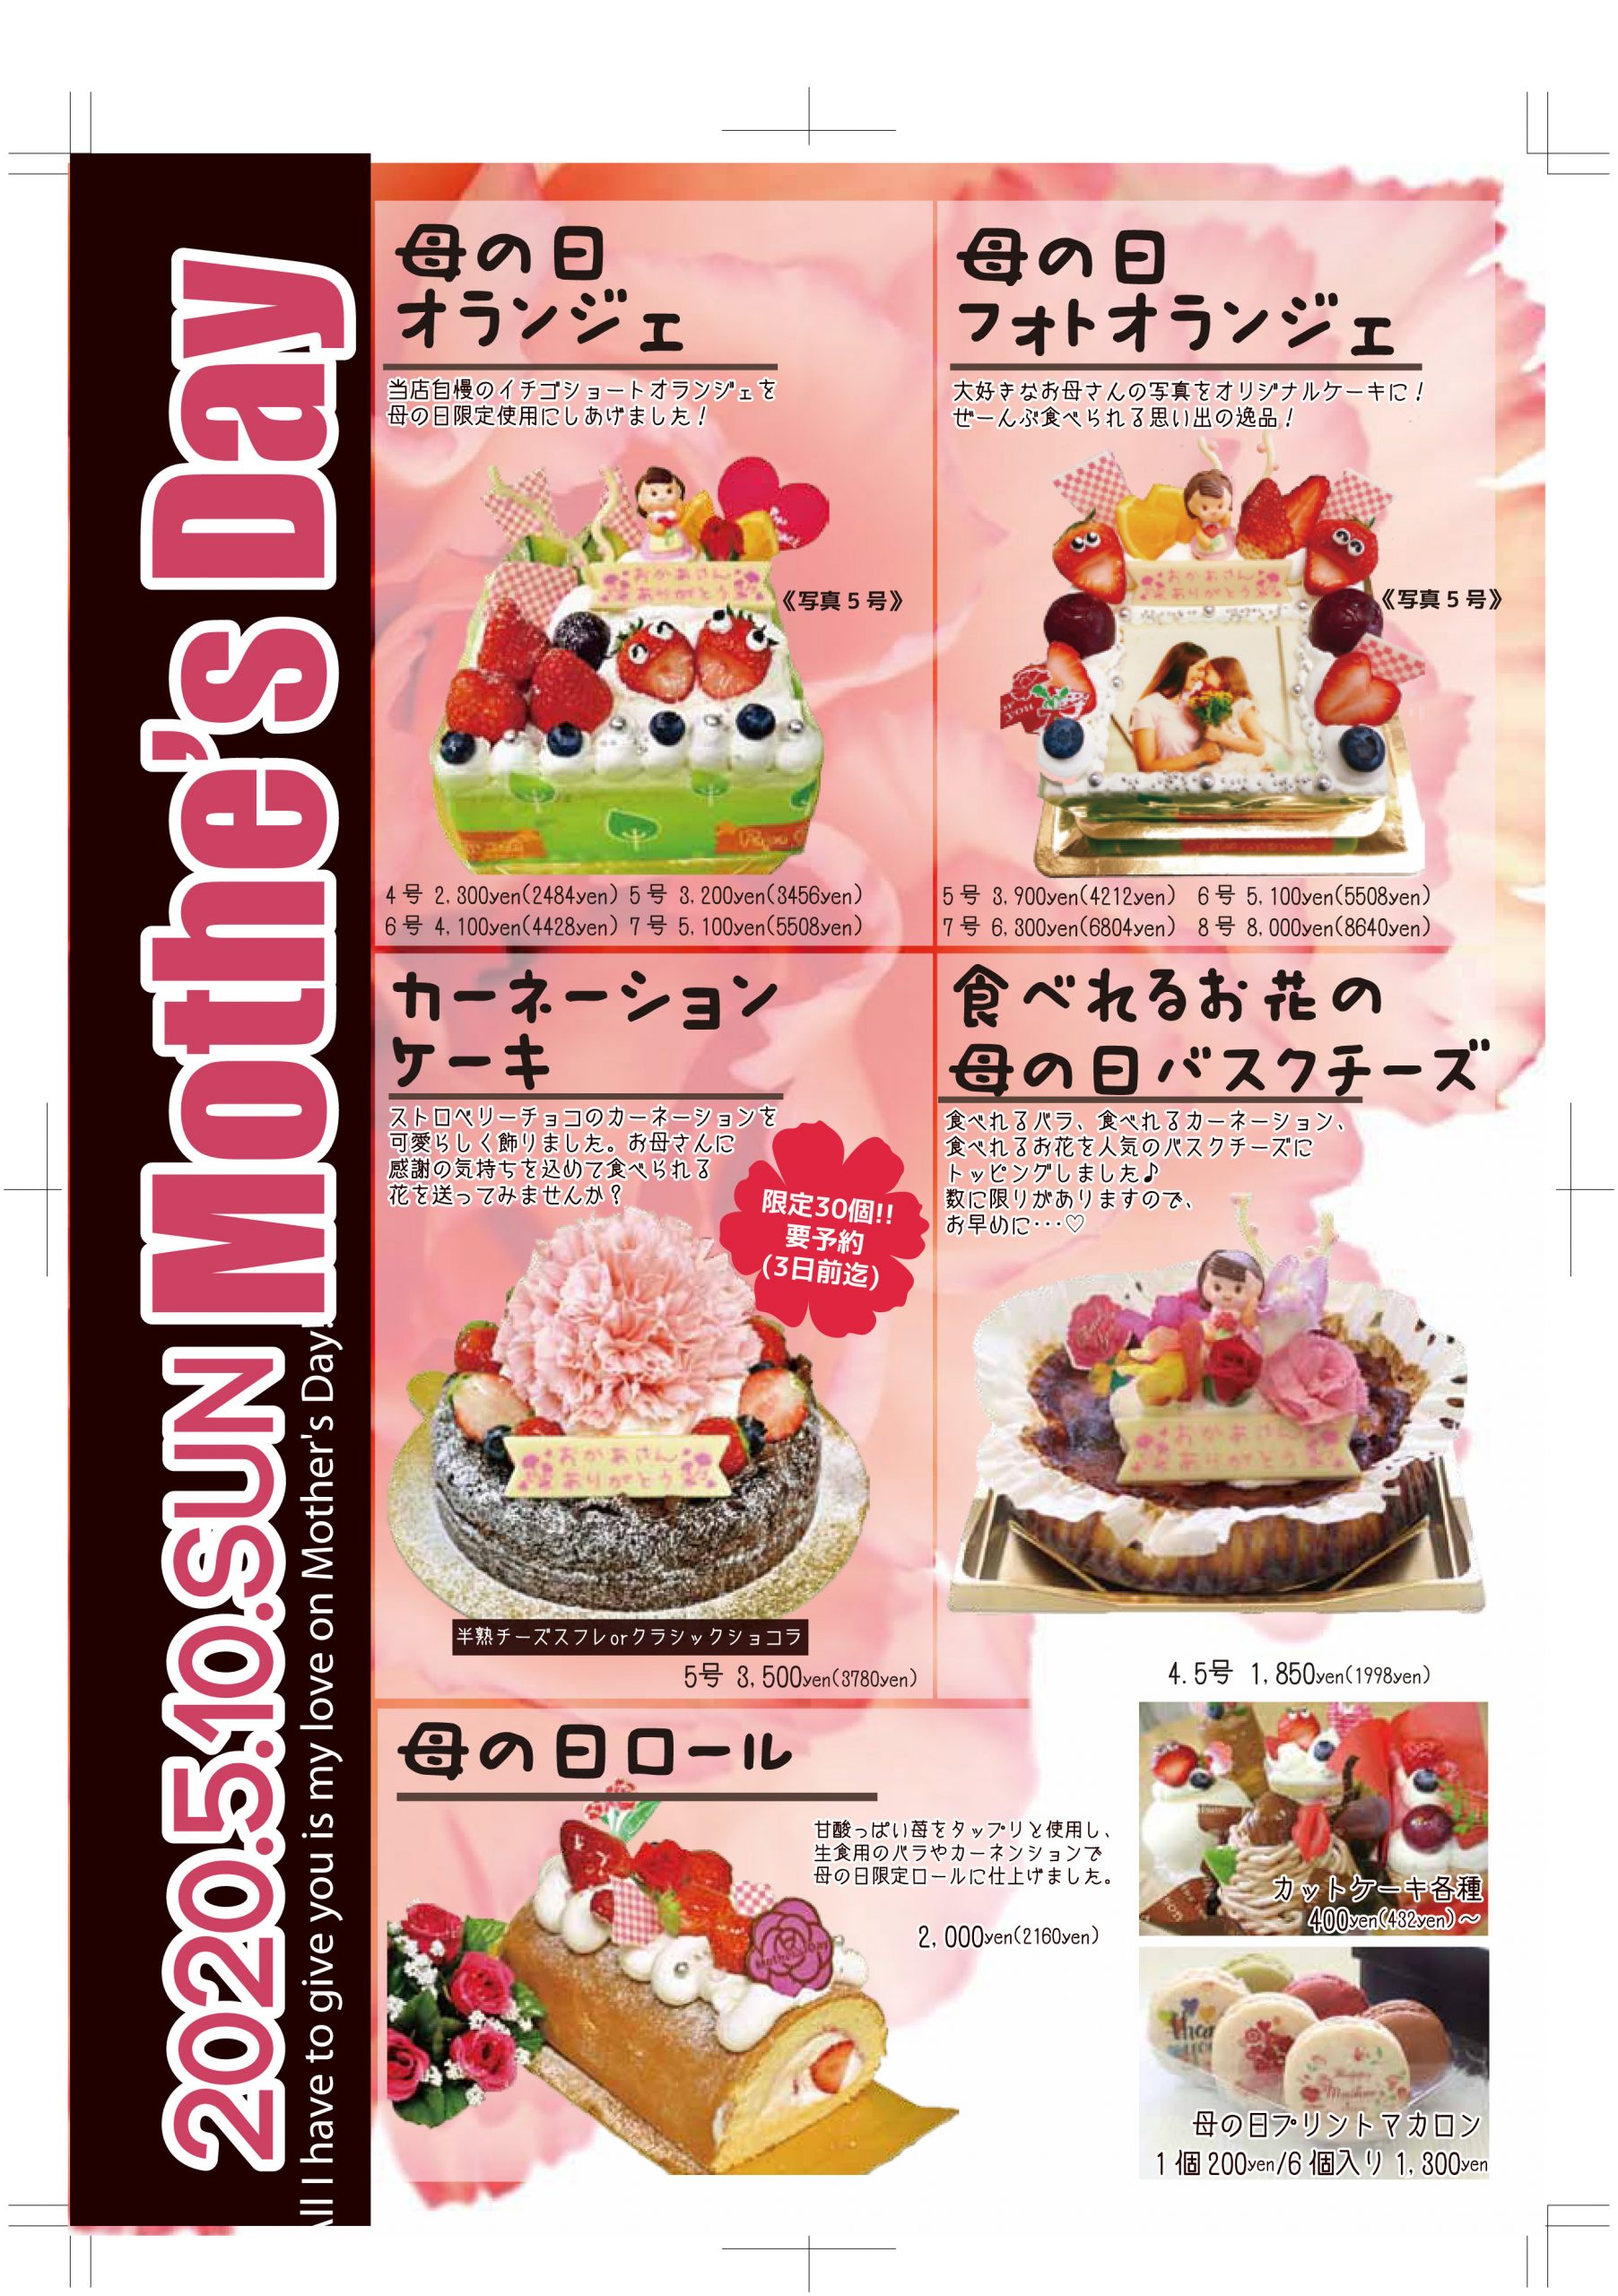 Papa Orange 愛知県稲沢市のケーキ店 5月10日は母の日